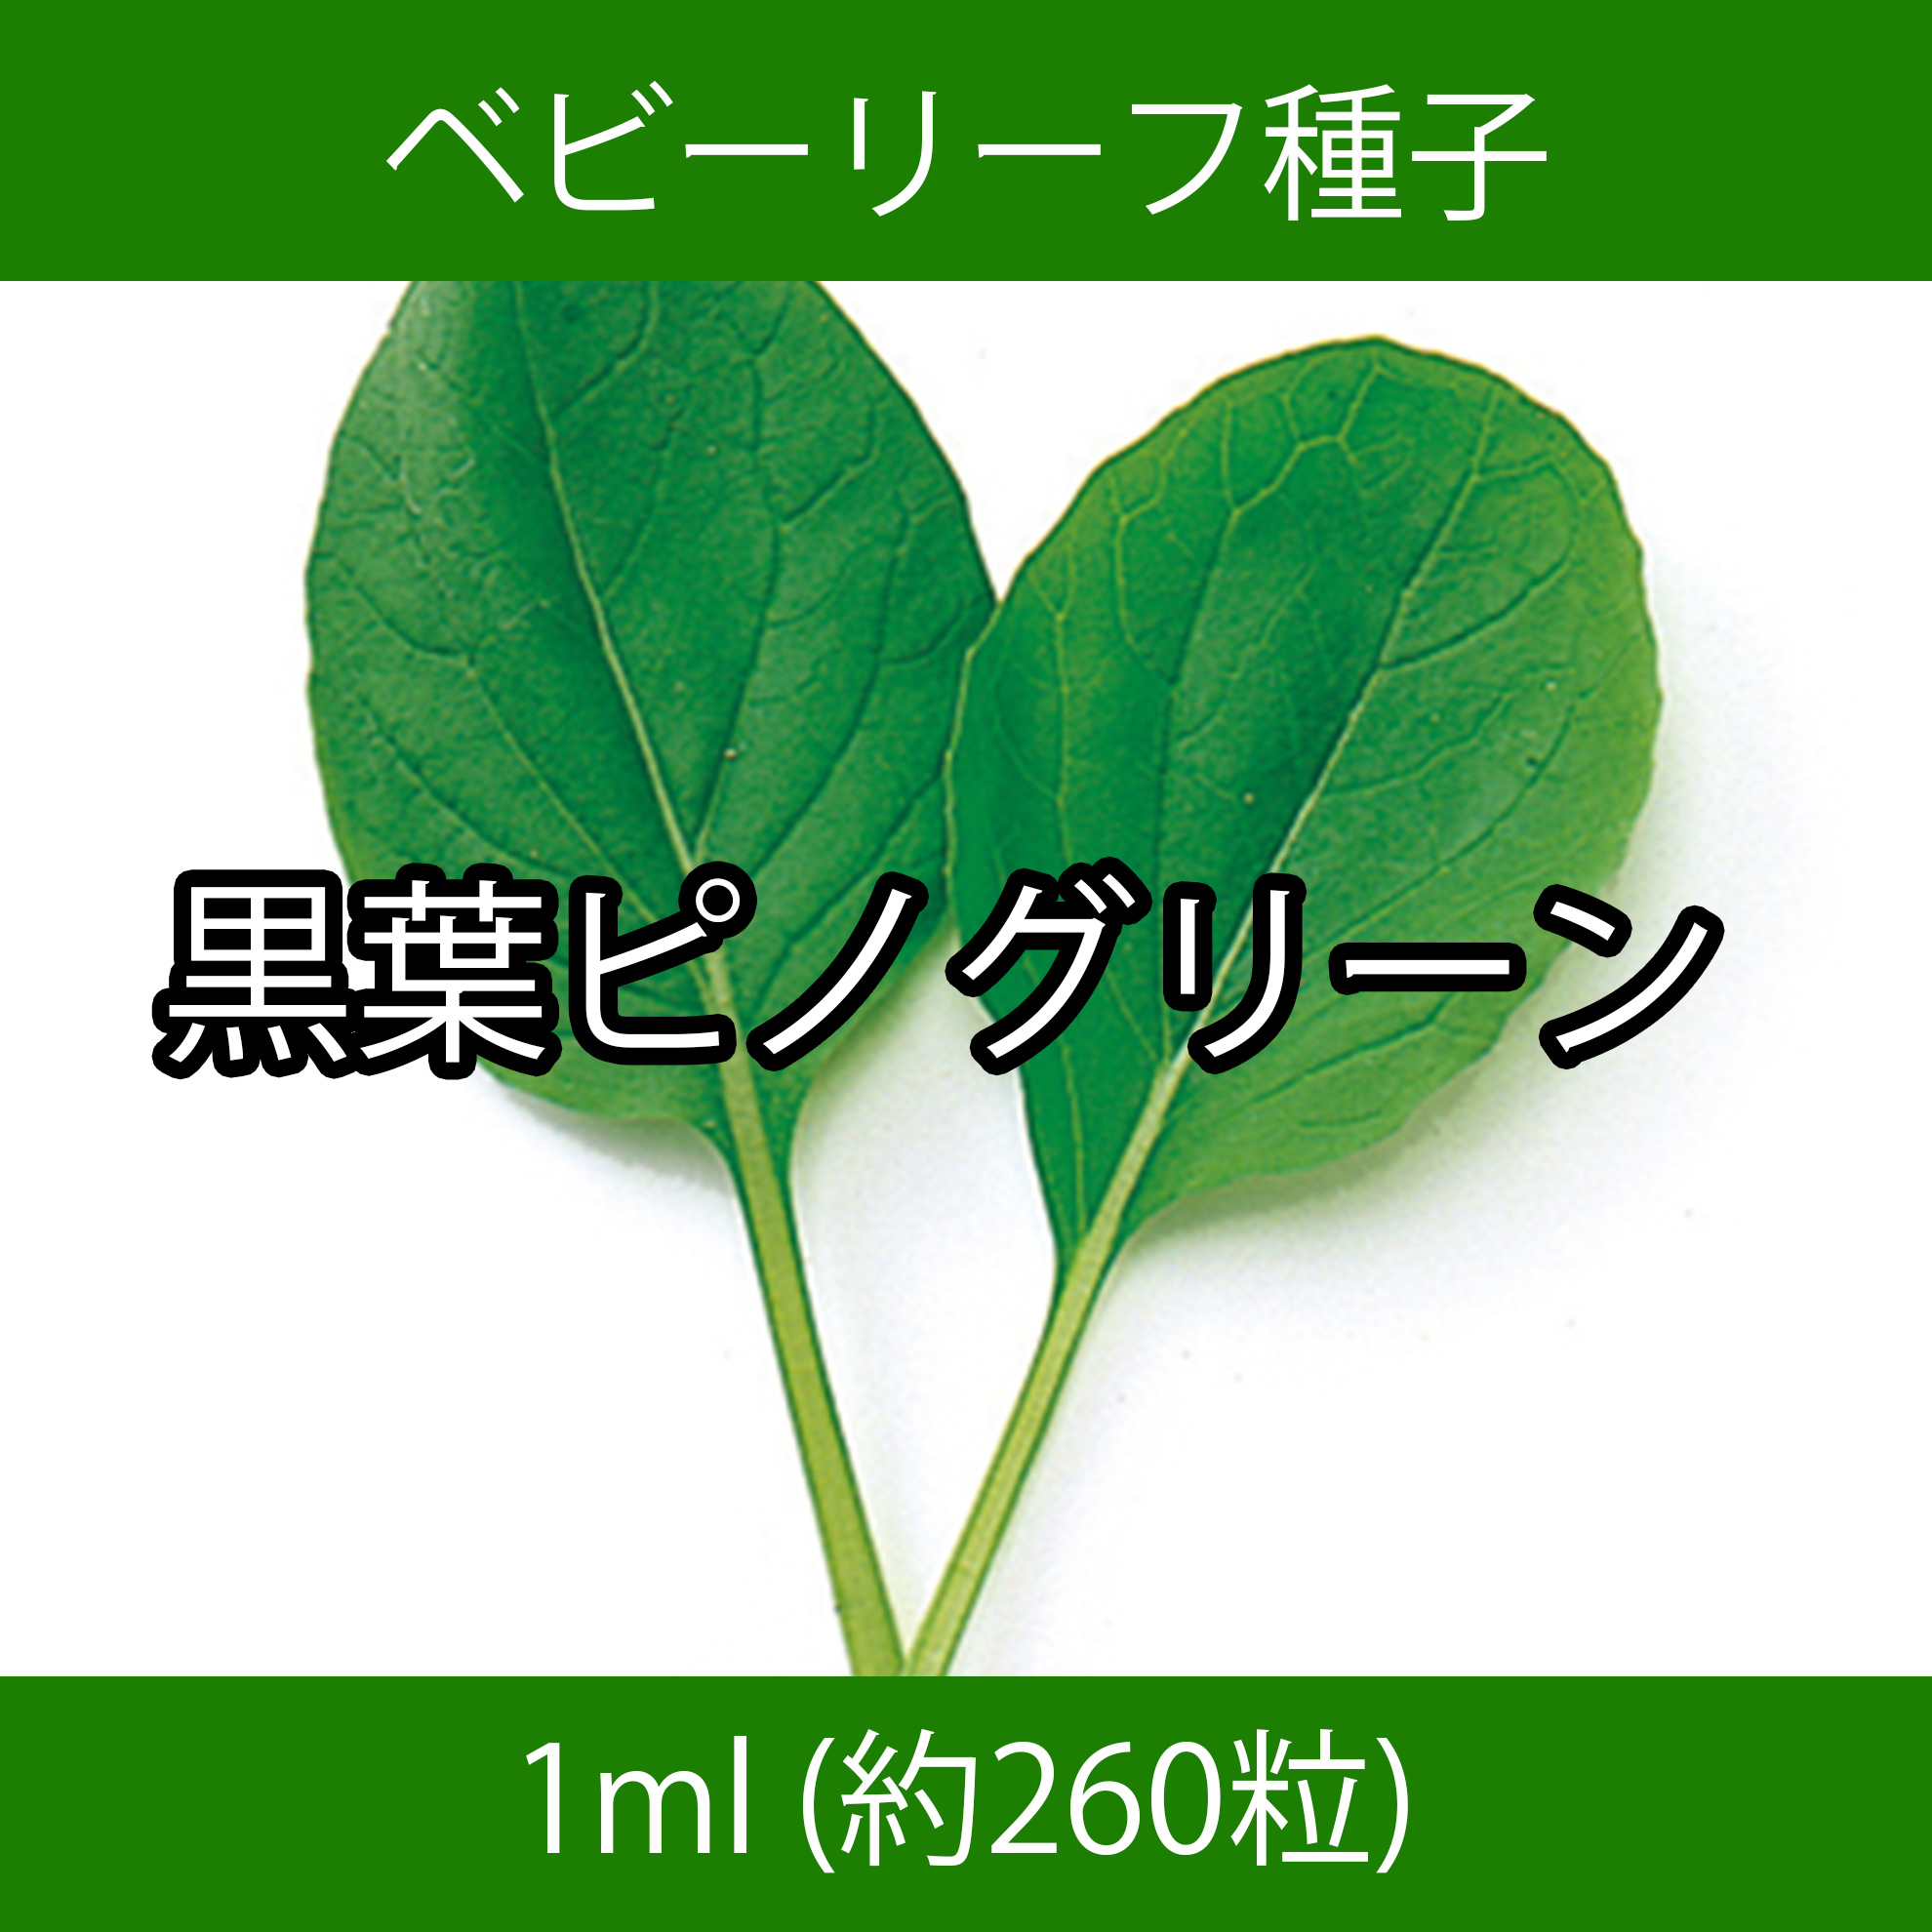 ベビーリーフ種子 B-25 黒葉ピノグリーン 1ml